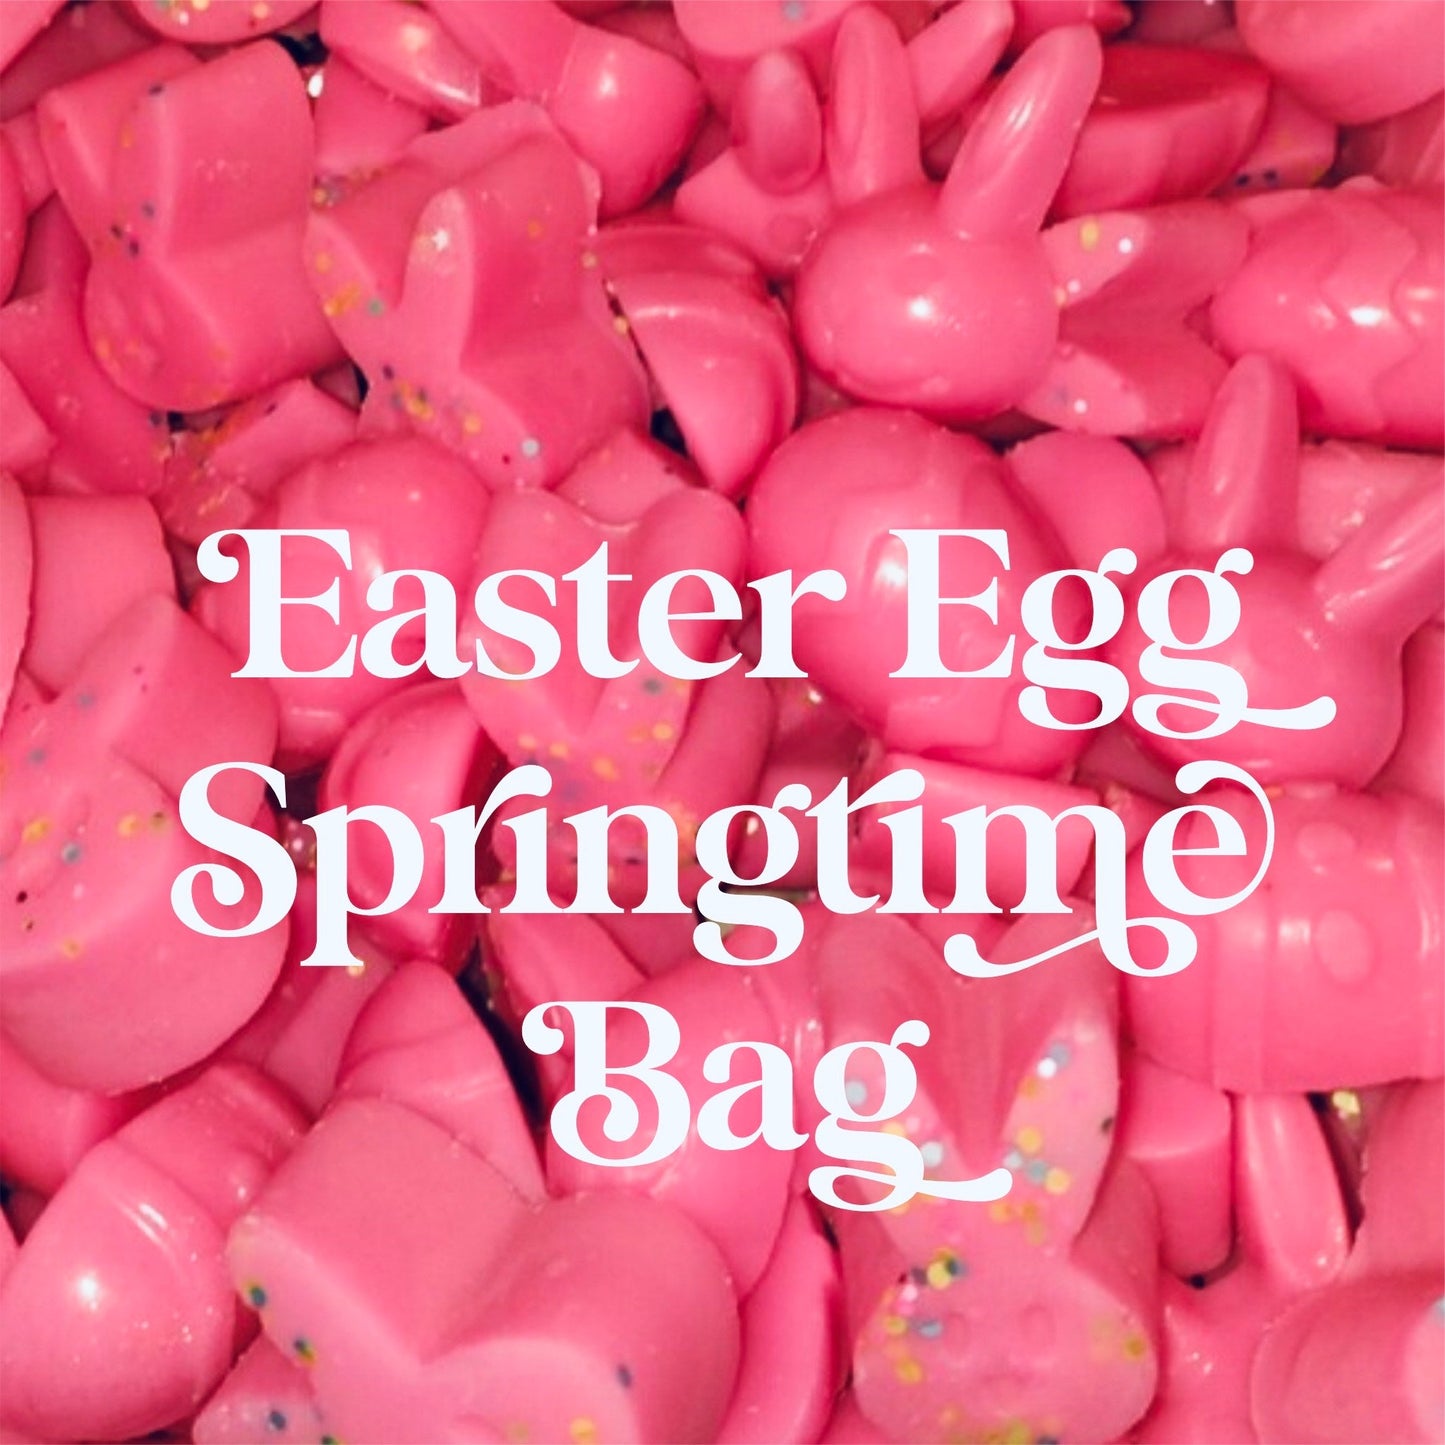 Pure Imagination (Easter Egg Springtime Bag)